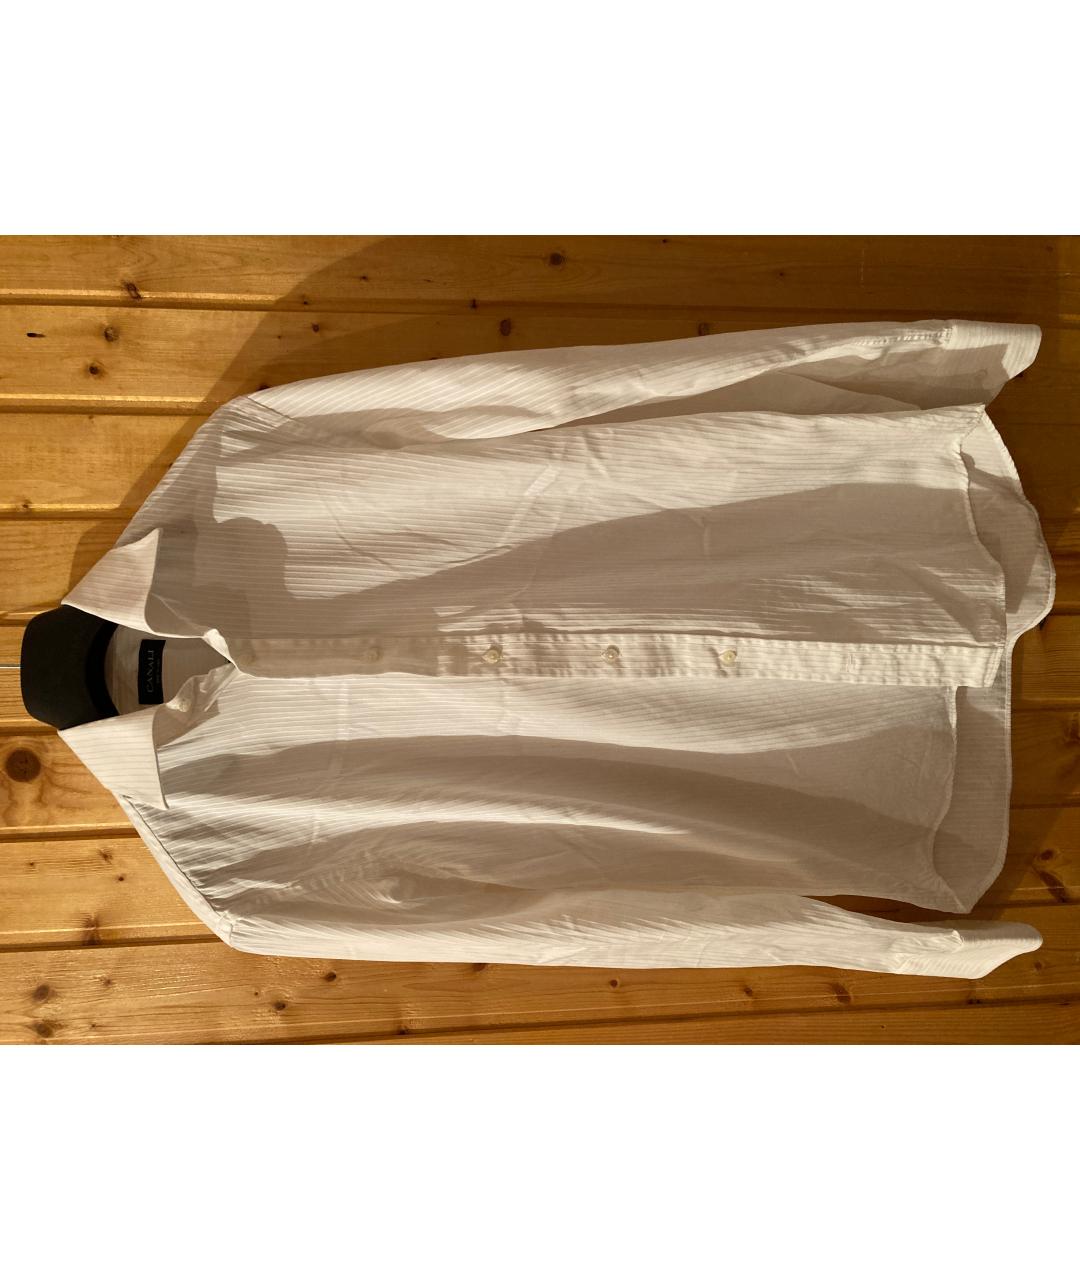 CANALI Белая хлопковая классическая рубашка, фото 3